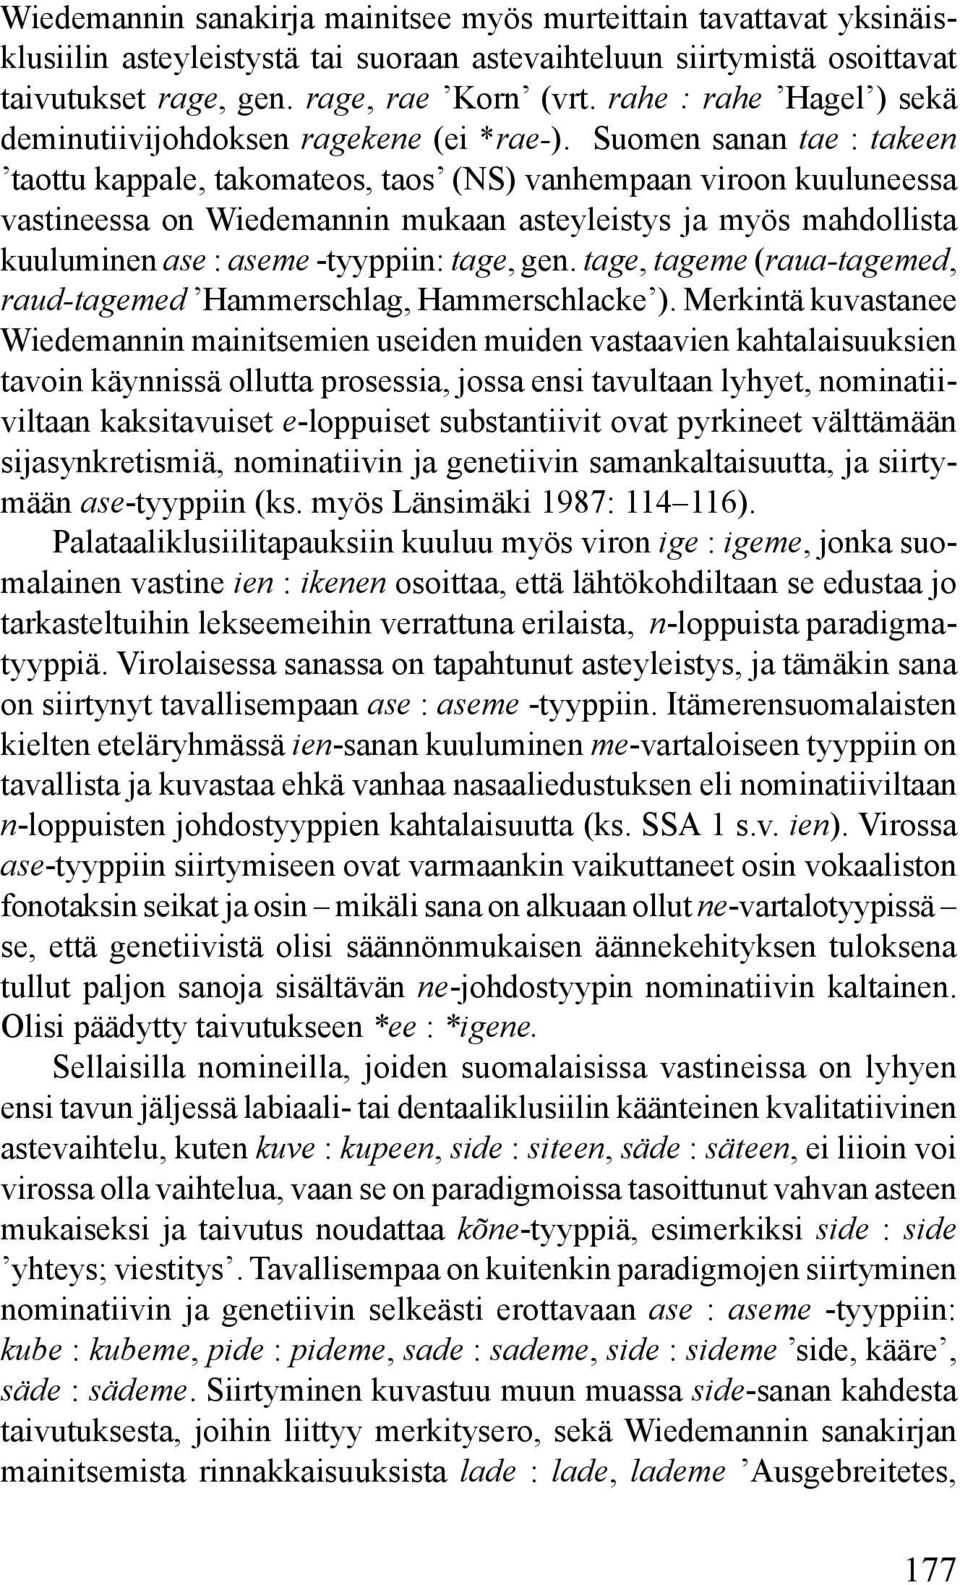 Suomen sanan tae : takeen taottu kappale, takomateos, taos (NS) vanhempaan viroon kuuluneessa vastineessa on Wiedemannin mukaan asteyleistys ja myös mahdollista kuuluminen ase : aseme -tyyppiin: